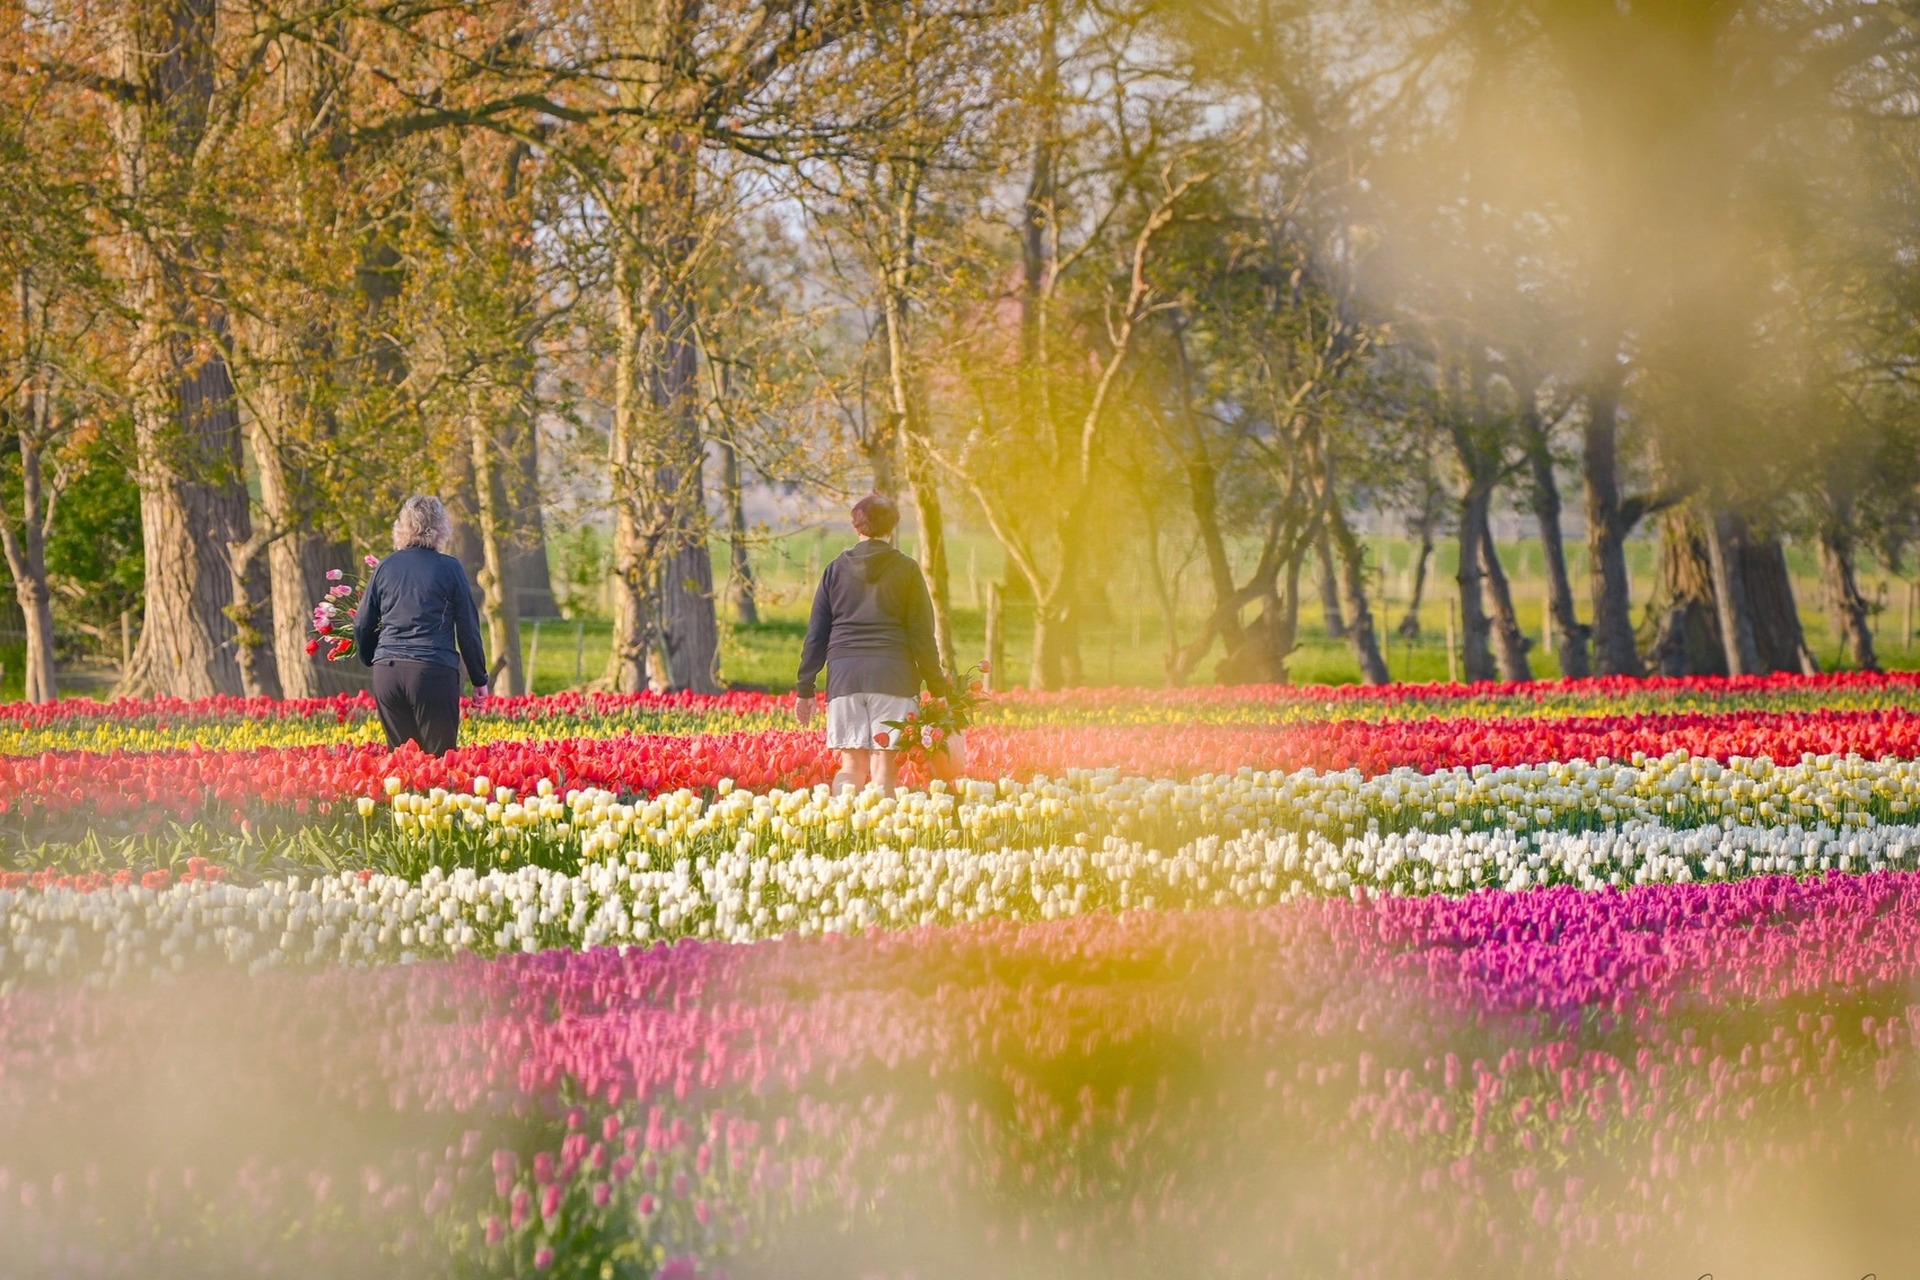 Mãn nhãn cánh đồng hoa tulip đẹp như cổ tích ở ngôi làng cổ 400 tuổi - Ảnh 15.